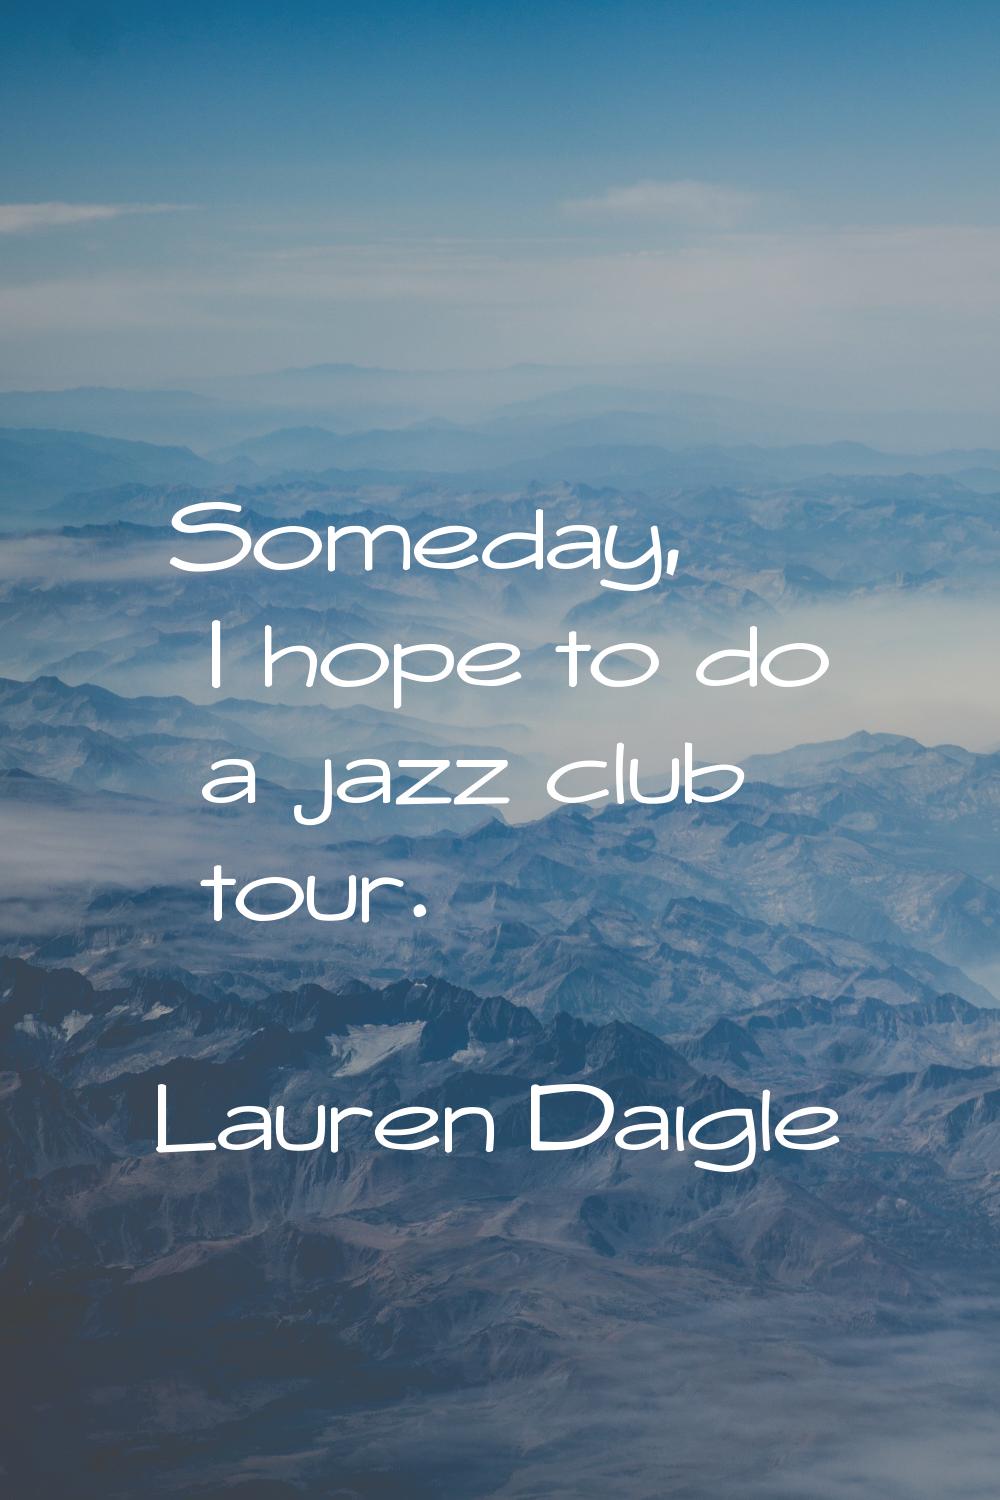 Someday, I hope to do a jazz club tour.